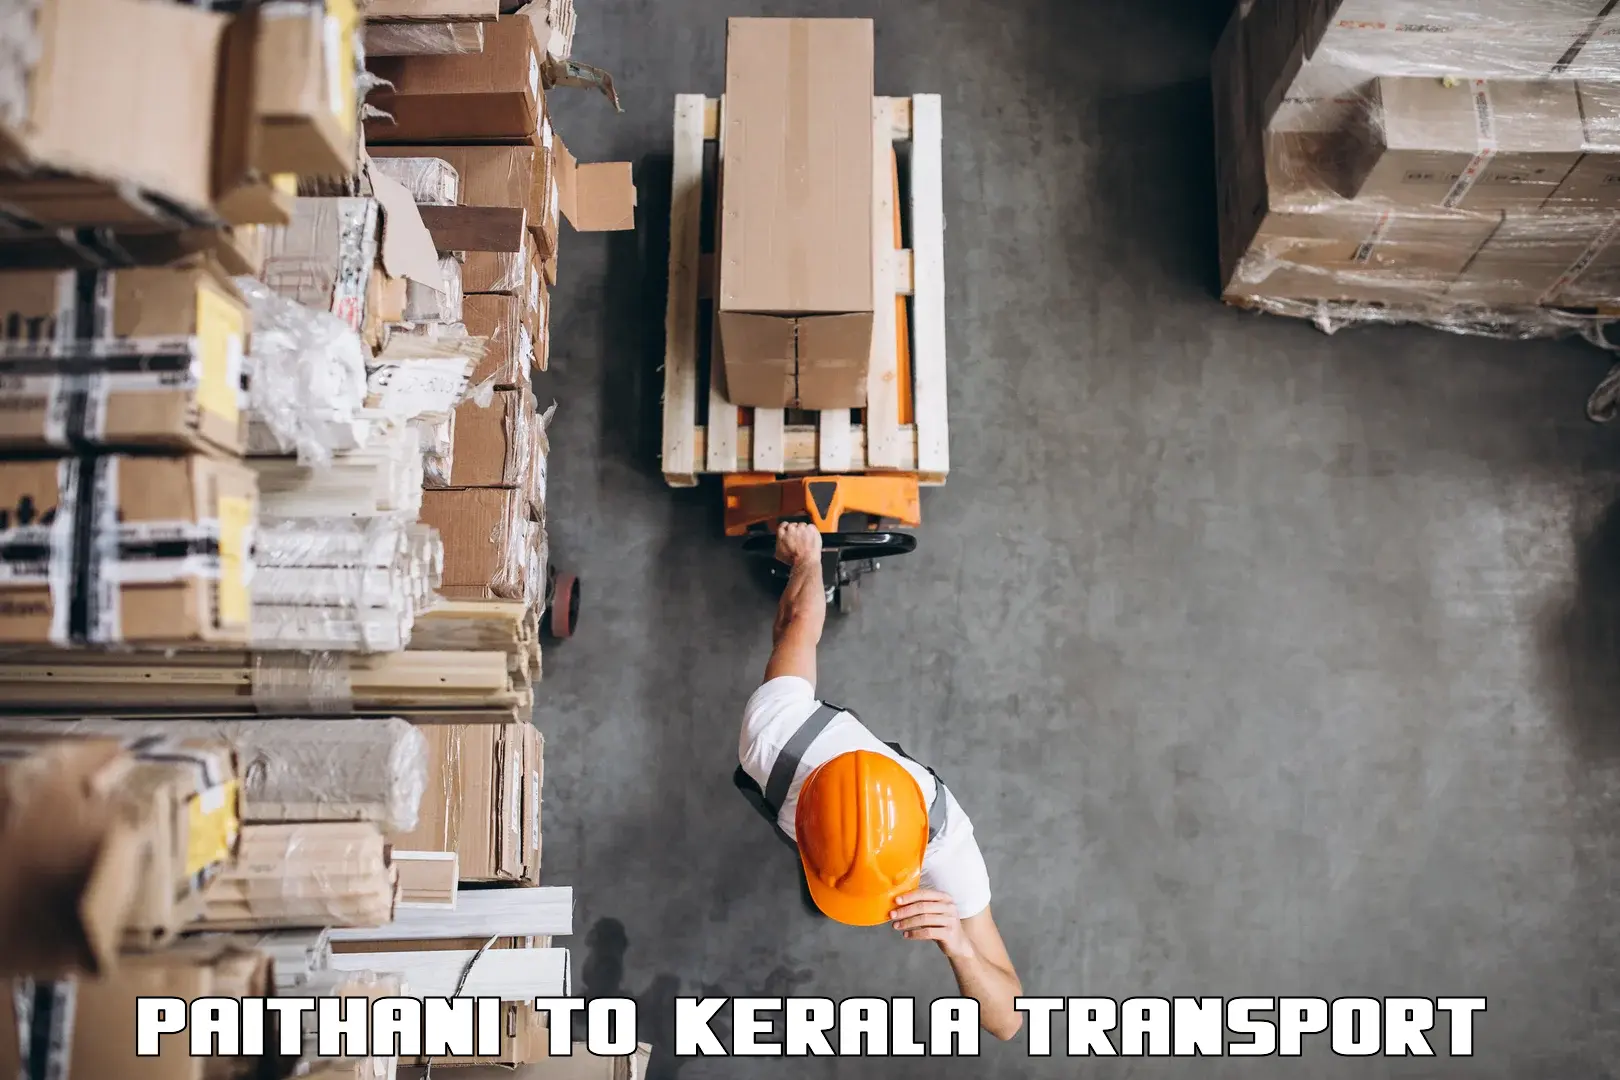 Truck transport companies in India Paithani to IIIT Kottayam